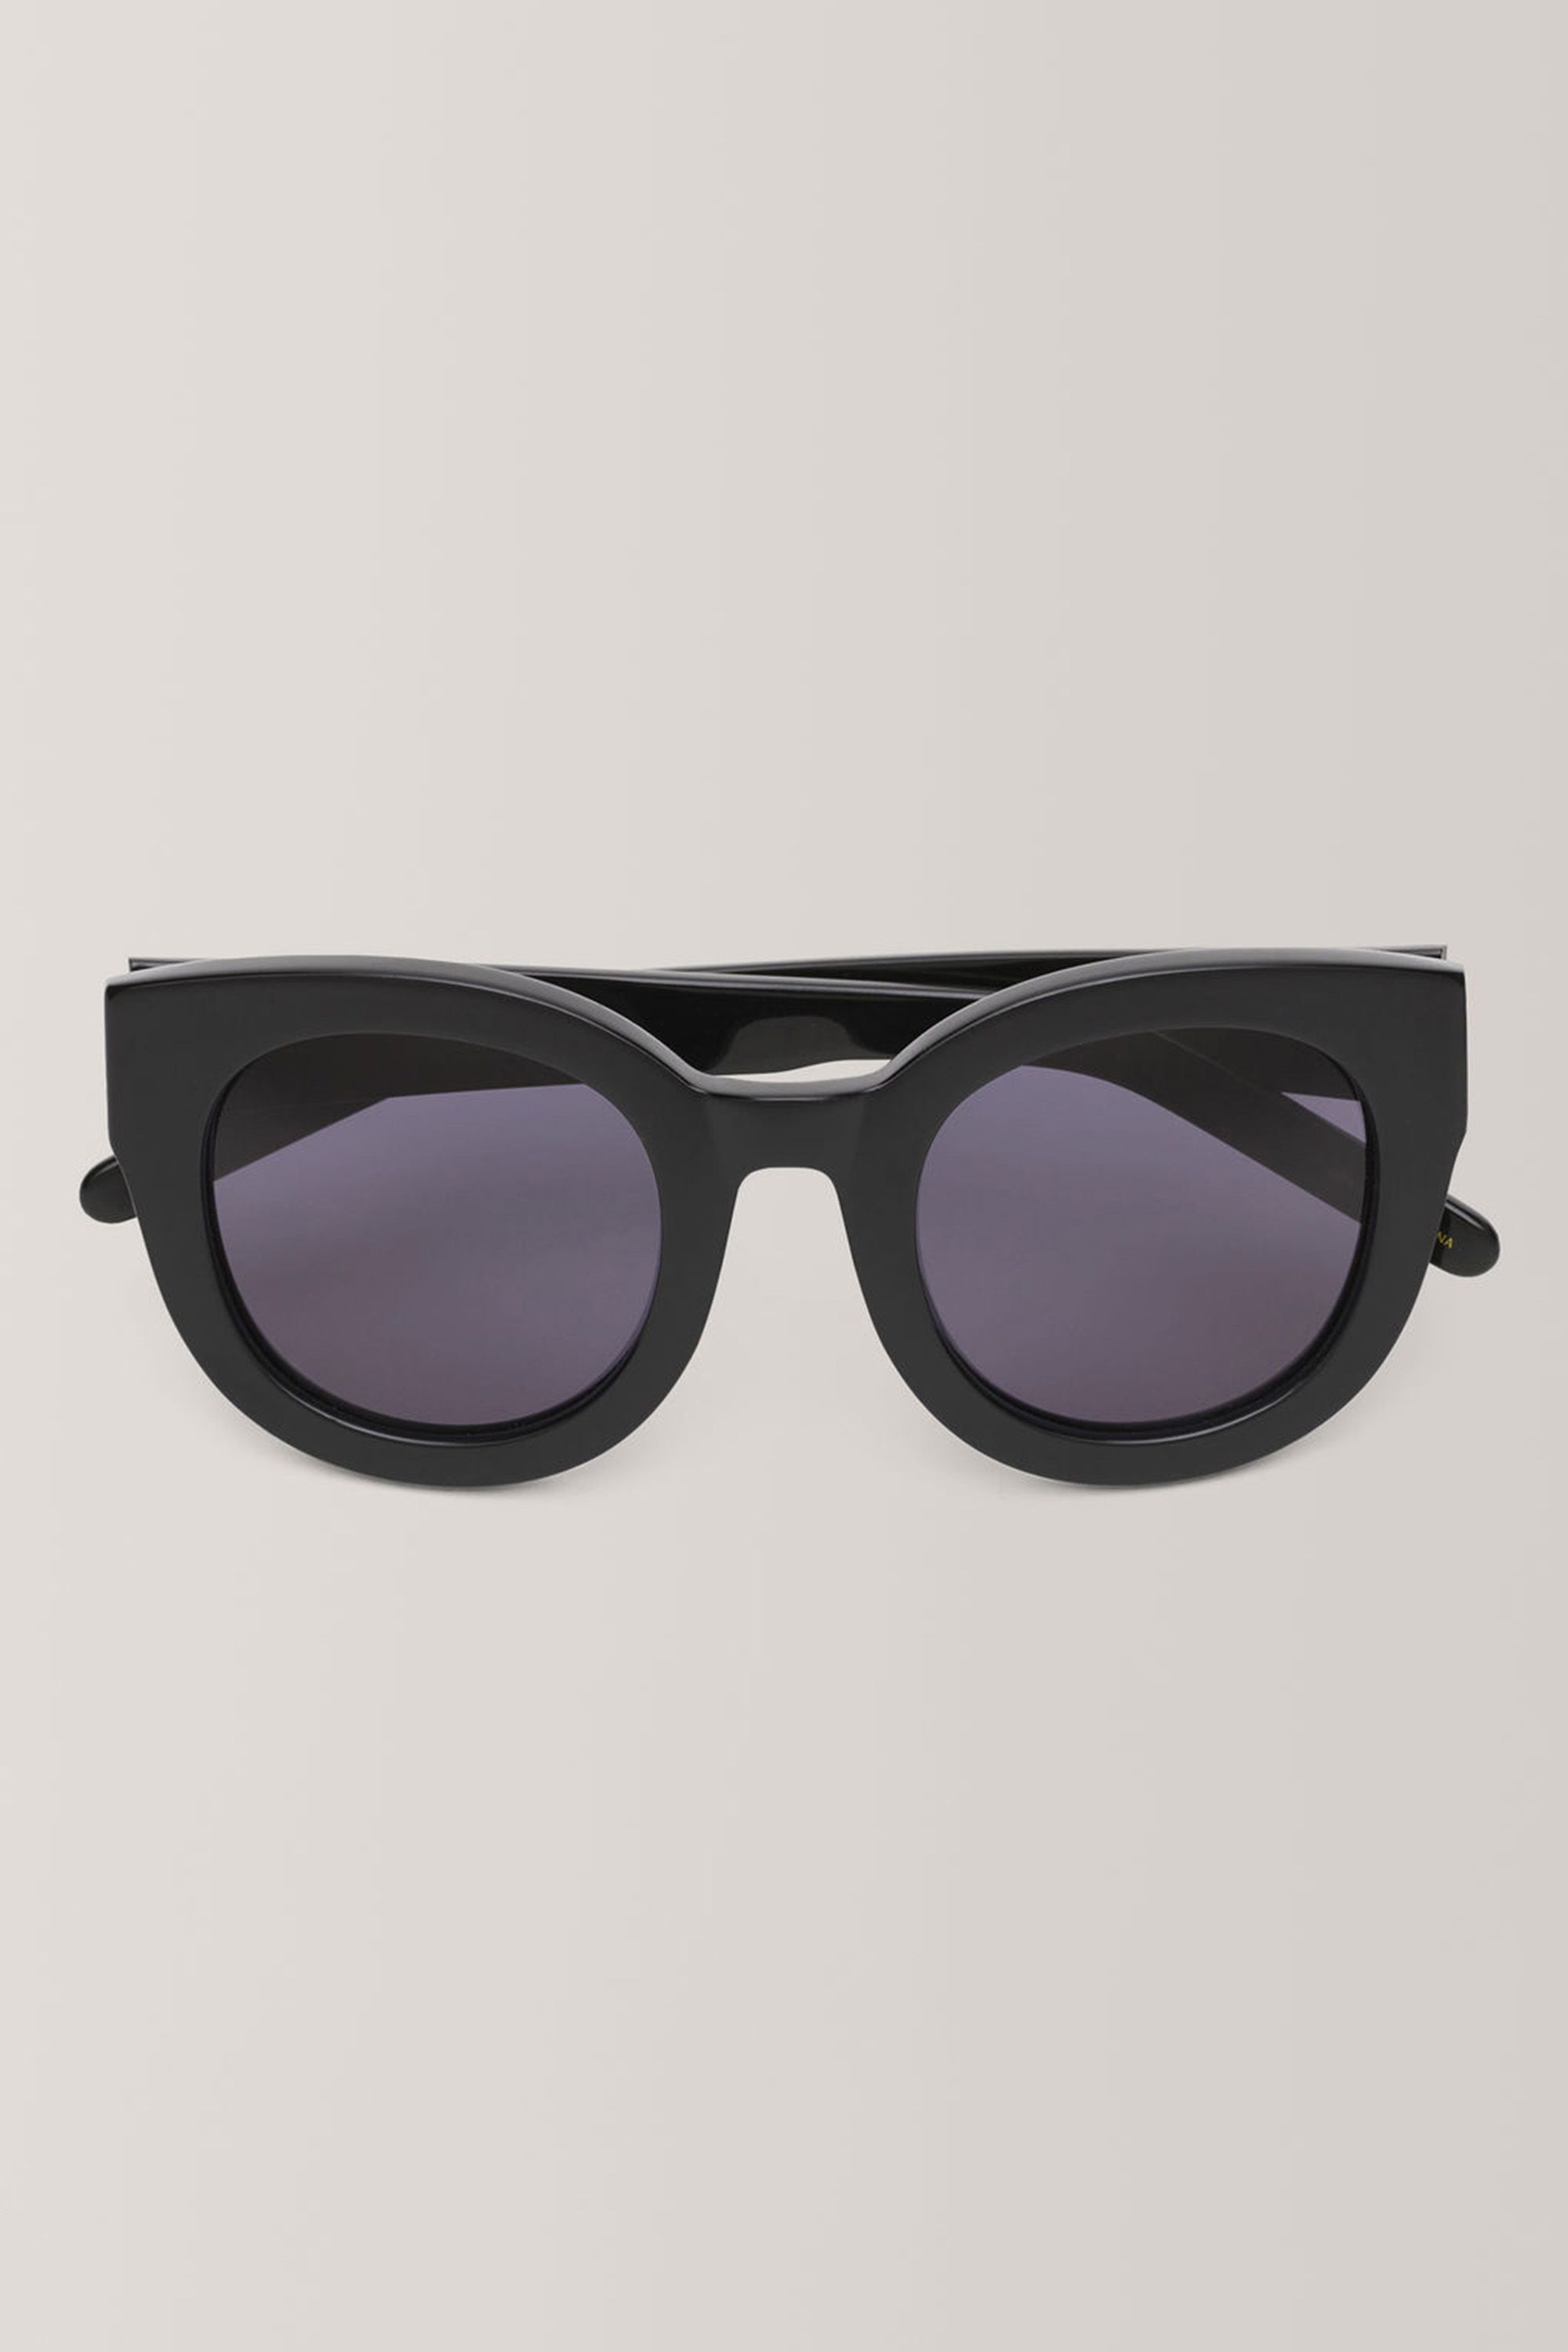 ganni-sunglasses-1532358493.jpg (2000Ã3000)